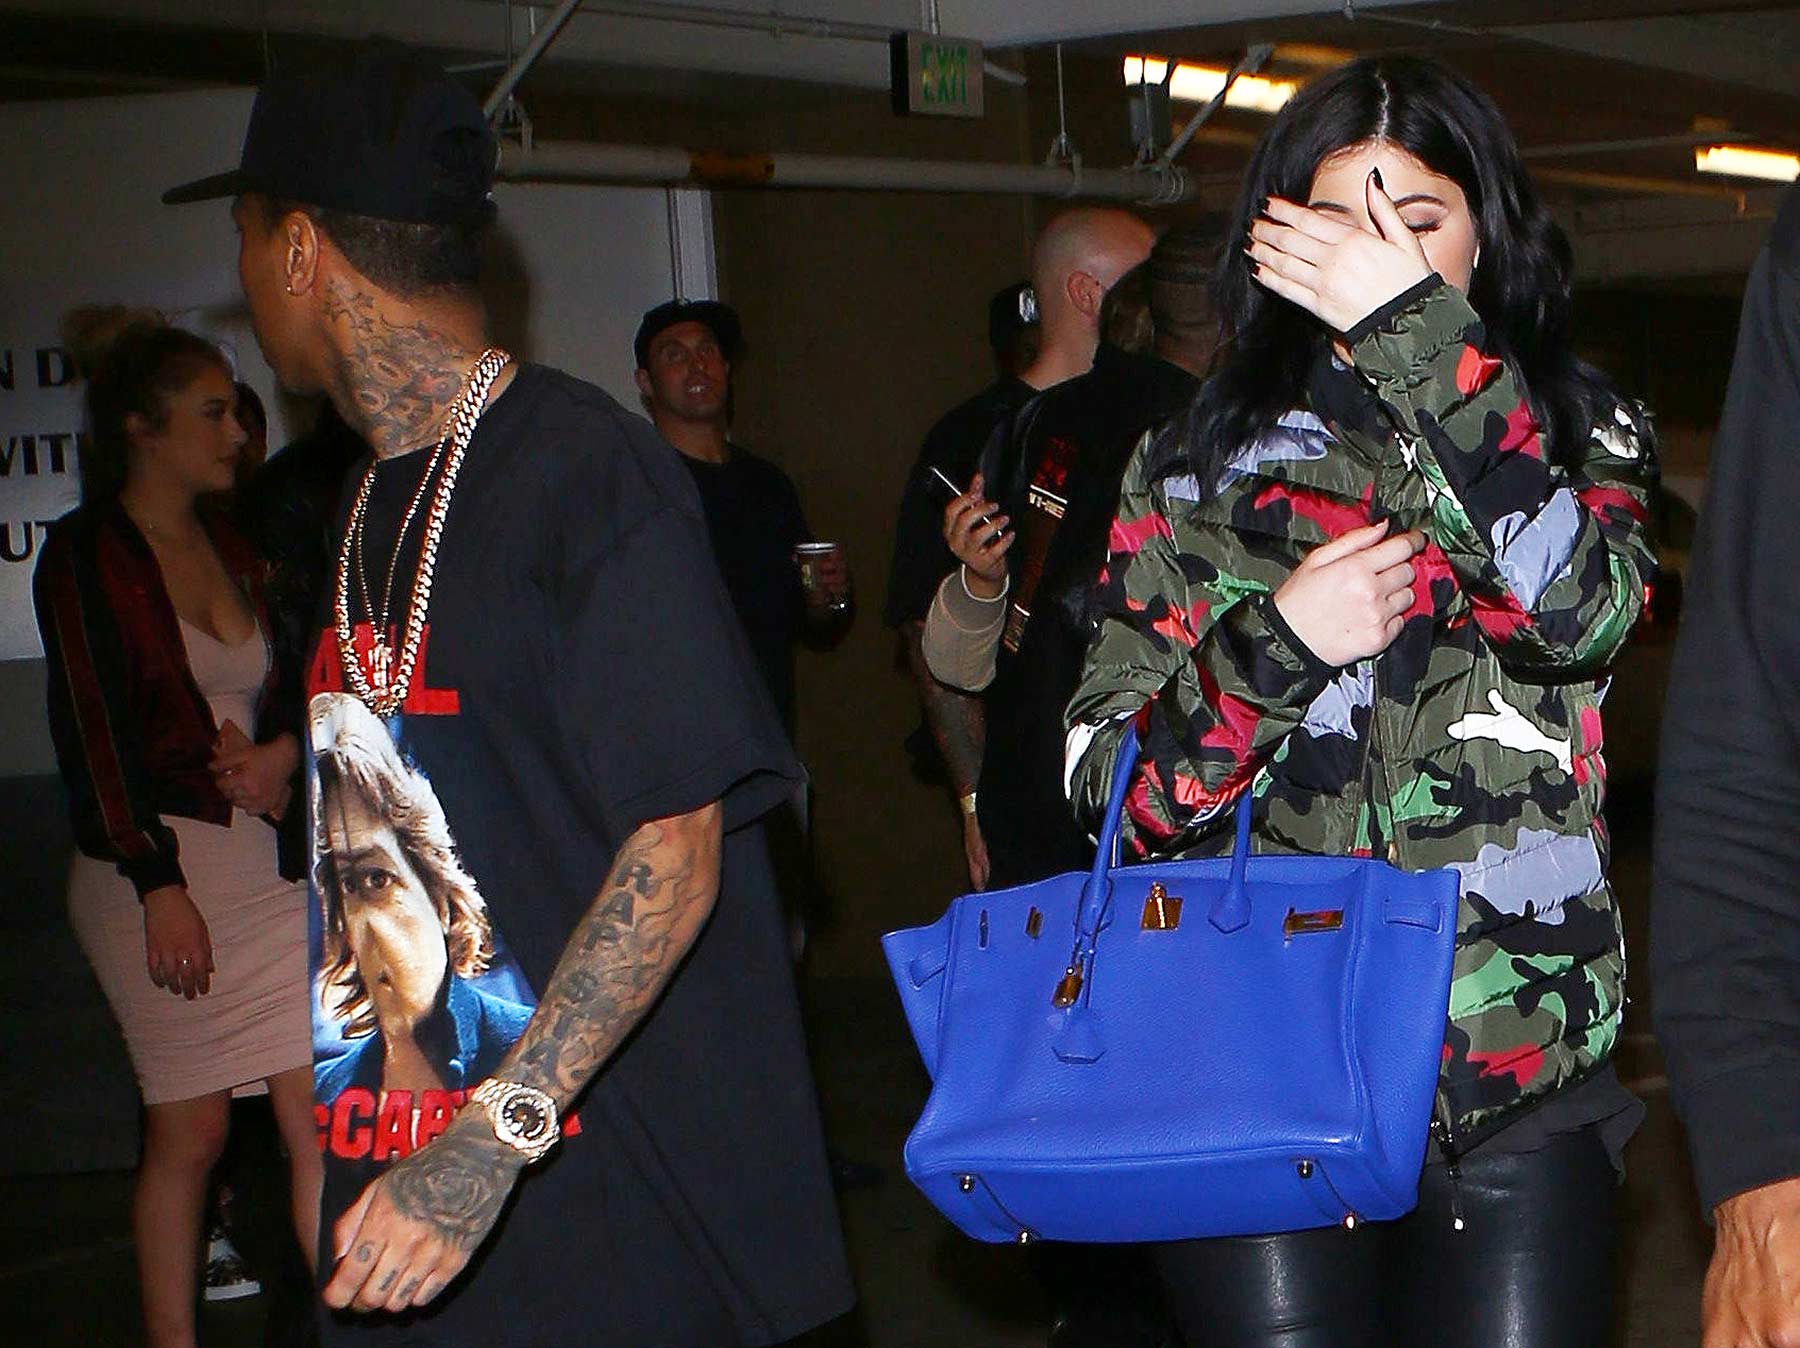 Kylie Jenner leaving Tyga’s concert